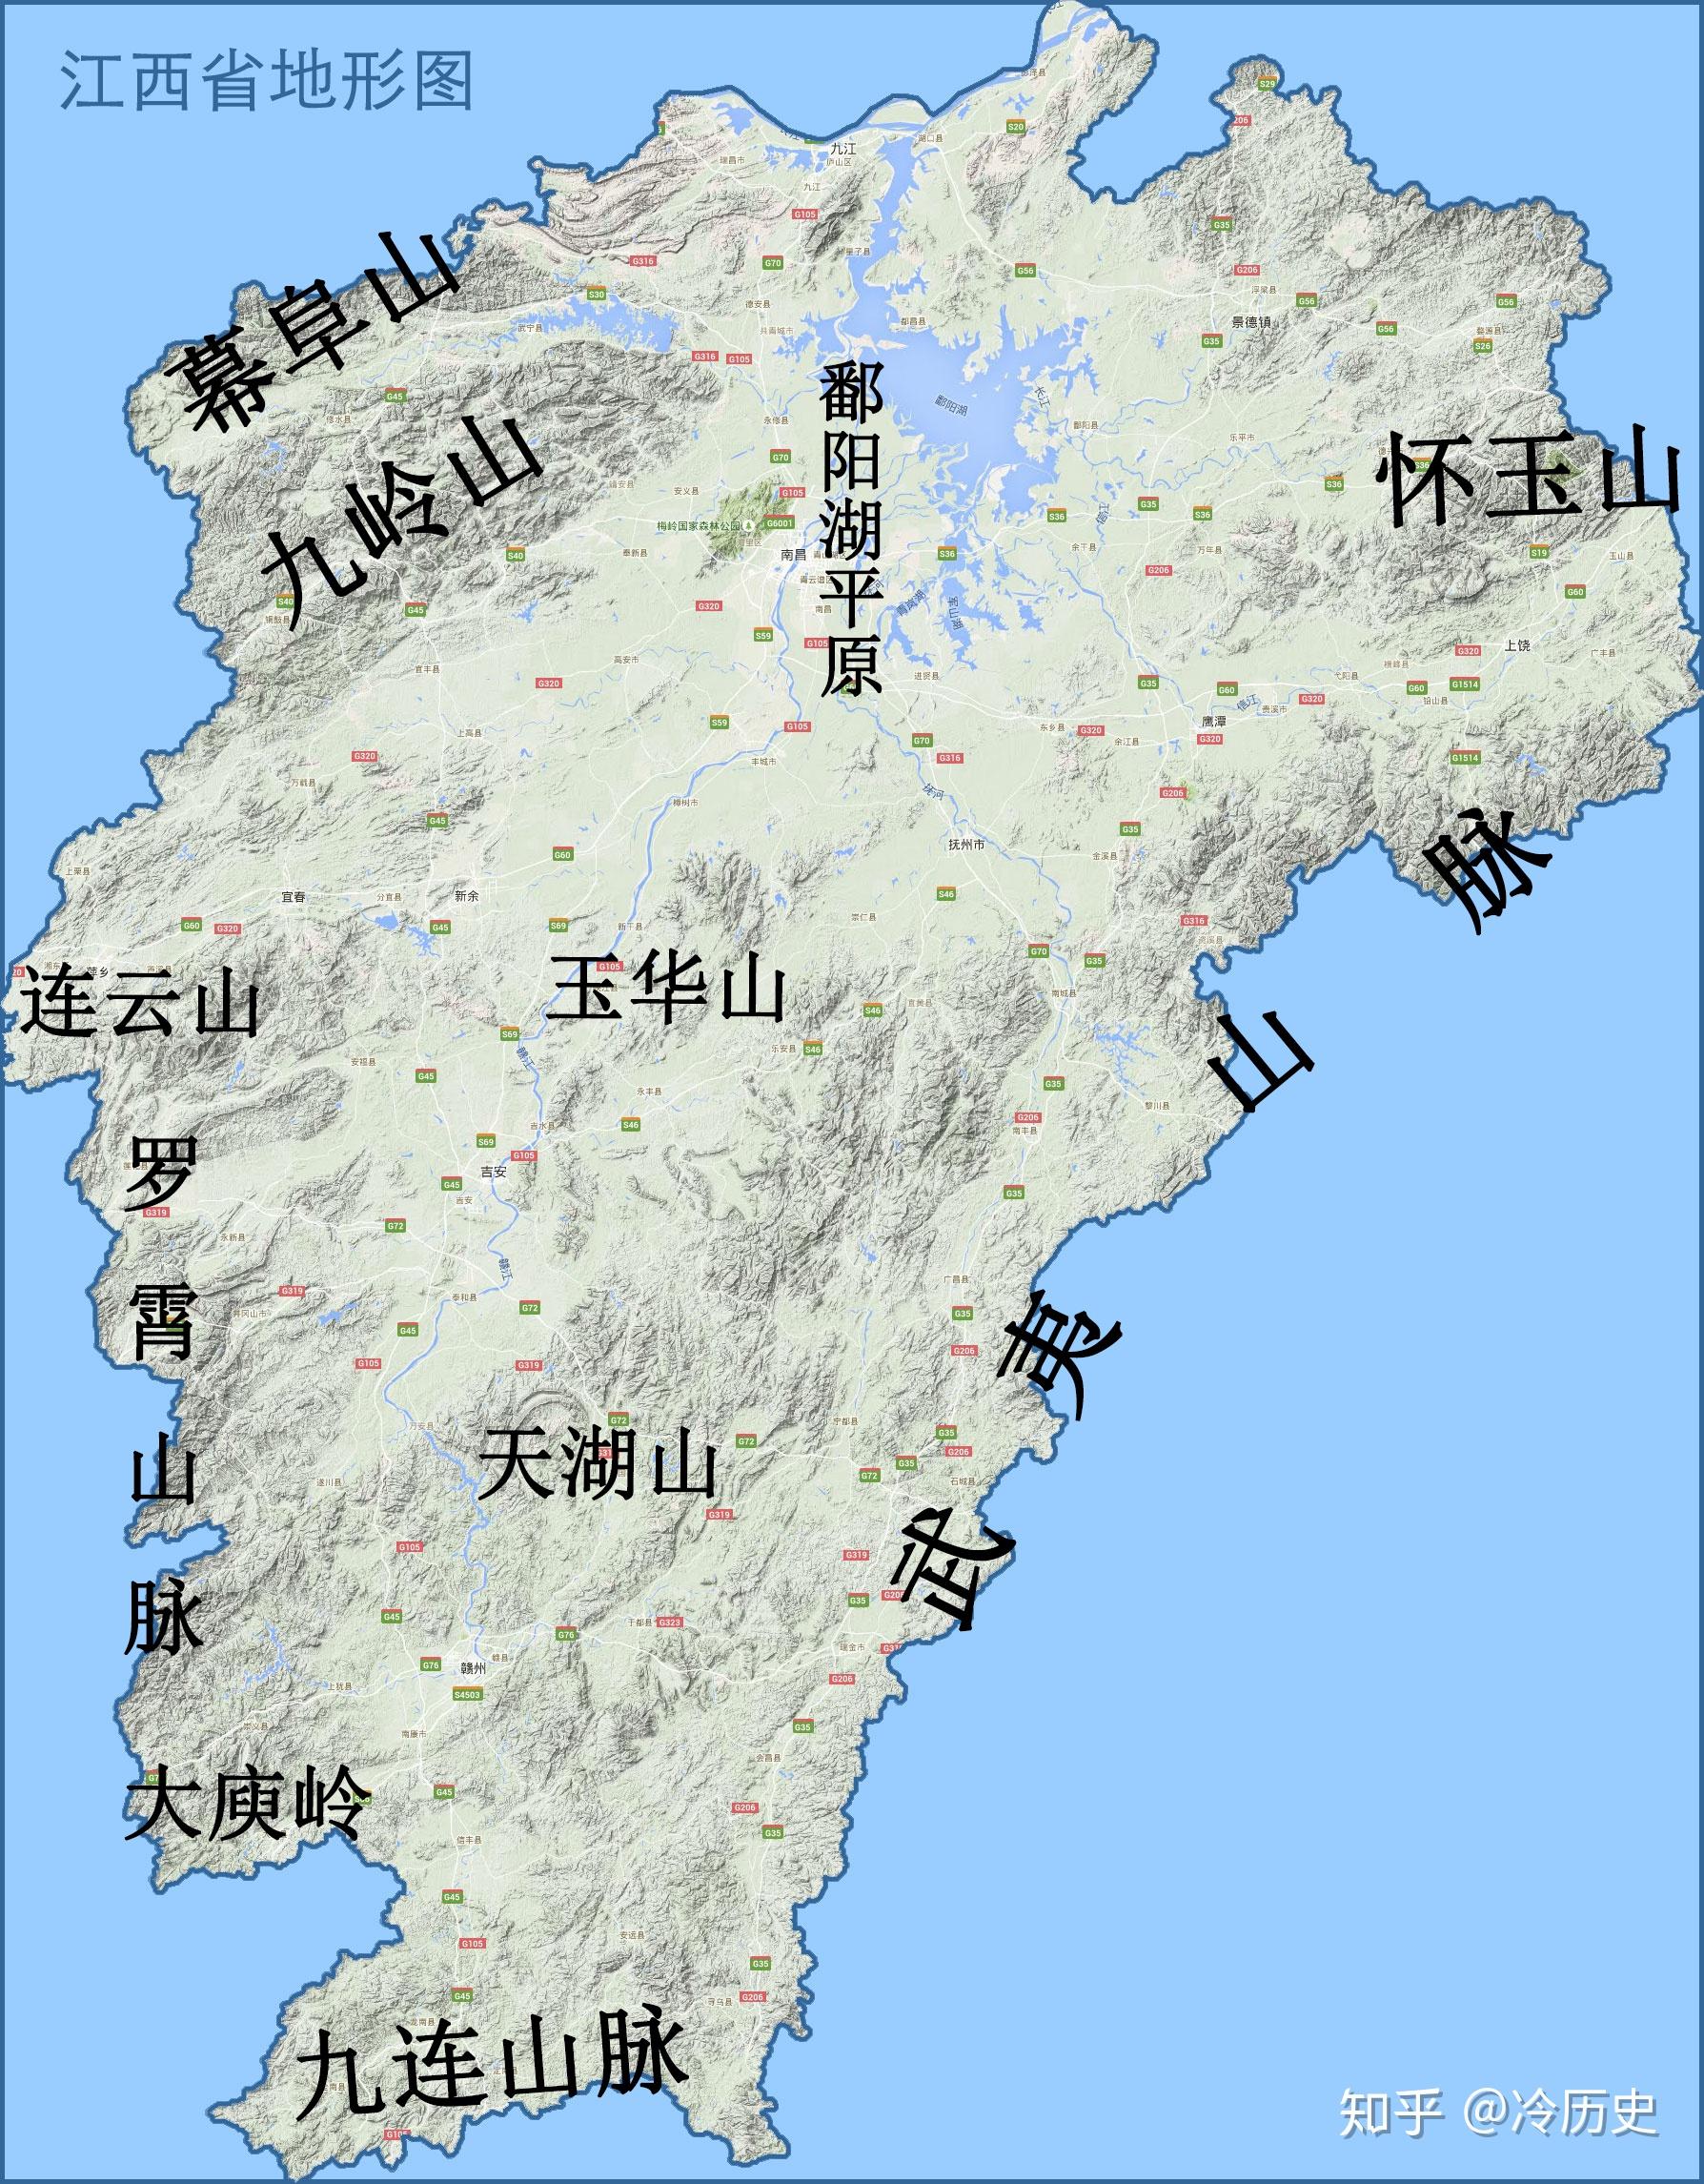 从江西省地形图可以看出,江西三面环山,一面是长江及鄱阳湖,整体上较